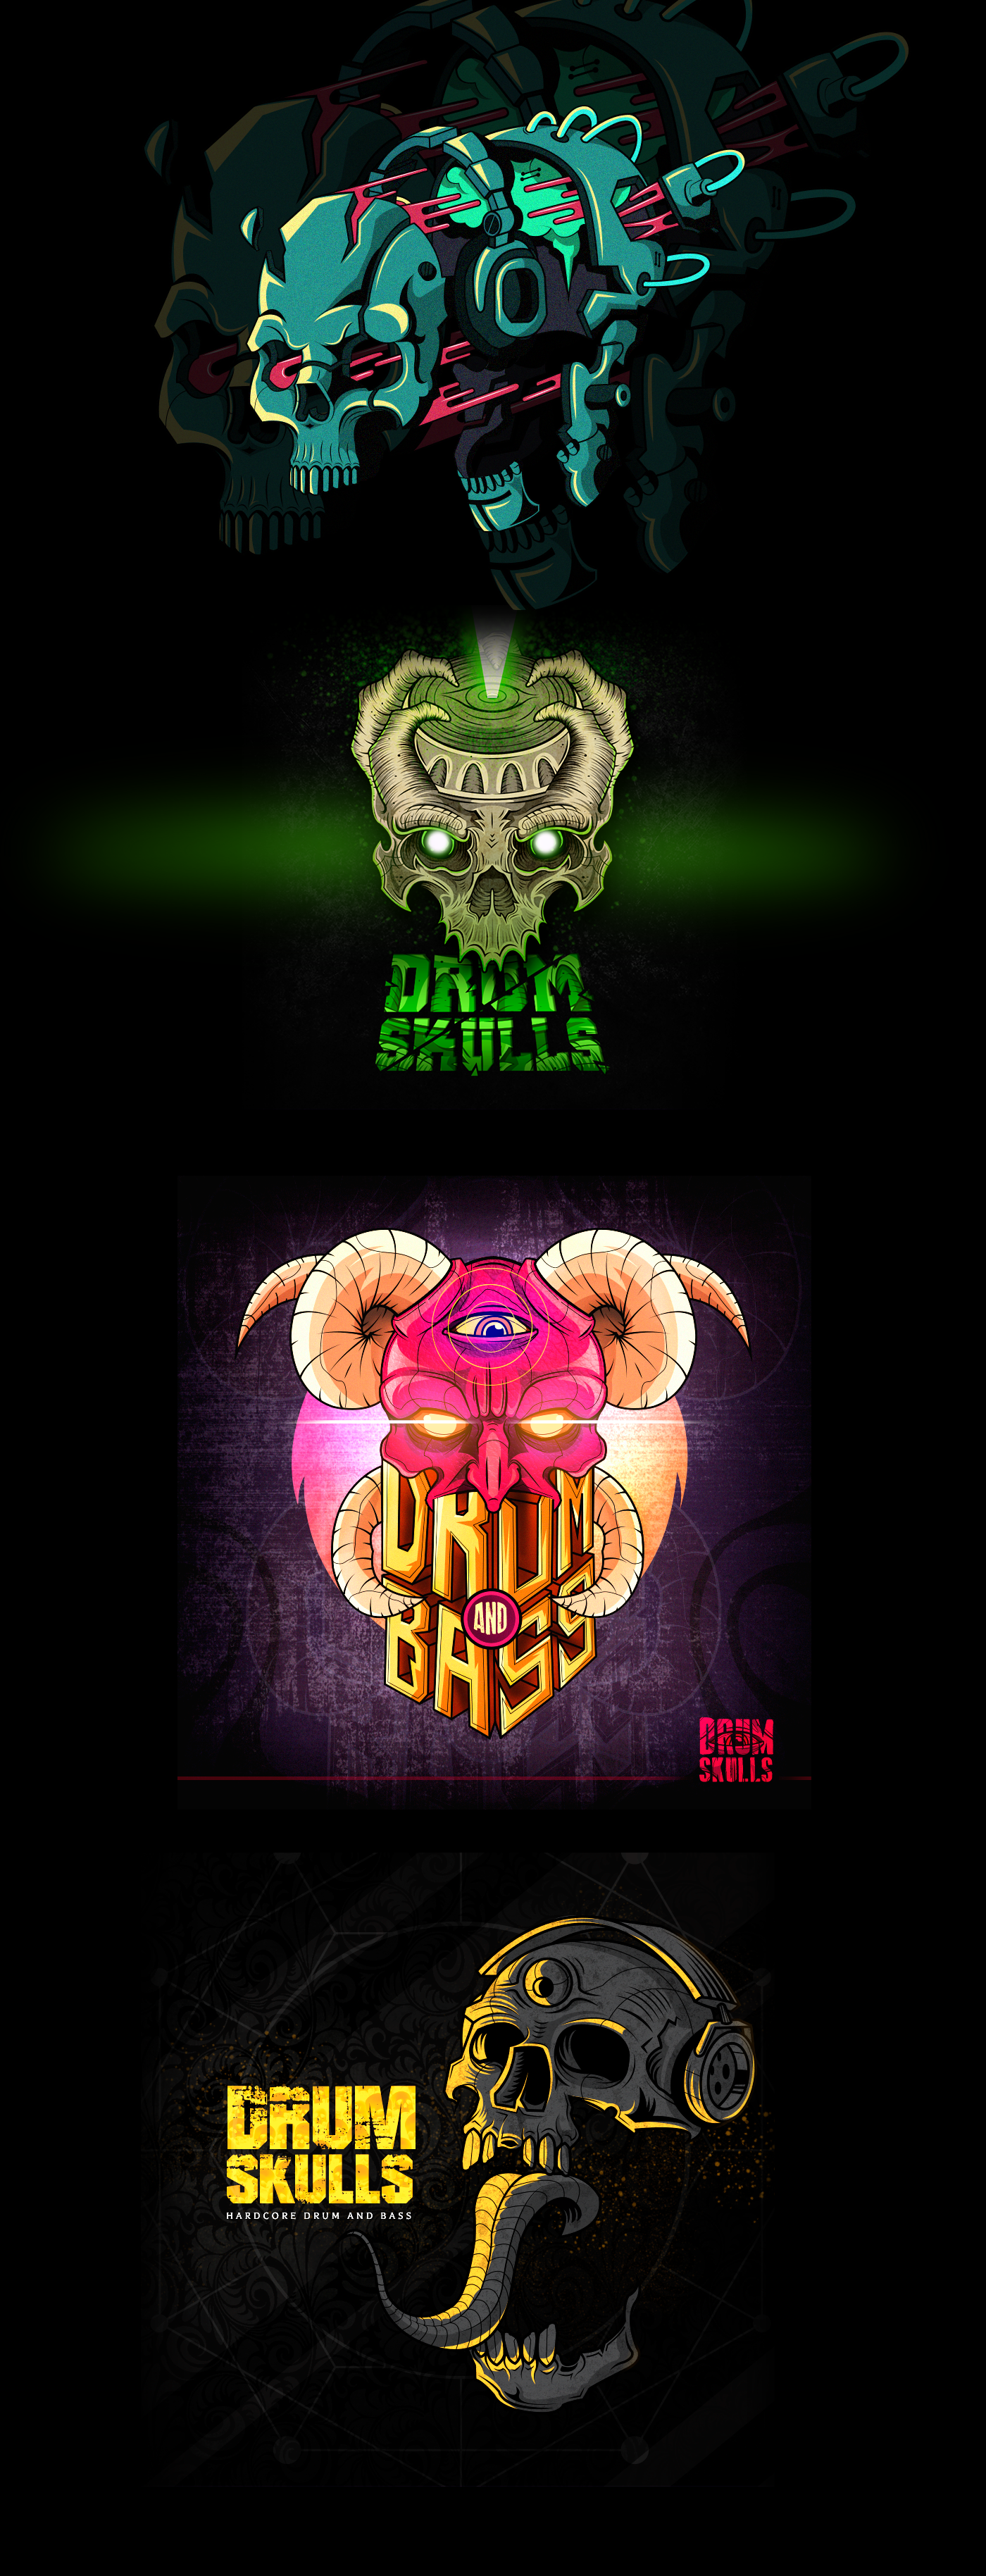 Hardcore Drum and Bass metal bandas diseño de discos ilustracion skull skull crissilustra ILUSTRADORES COLOMBIANOS